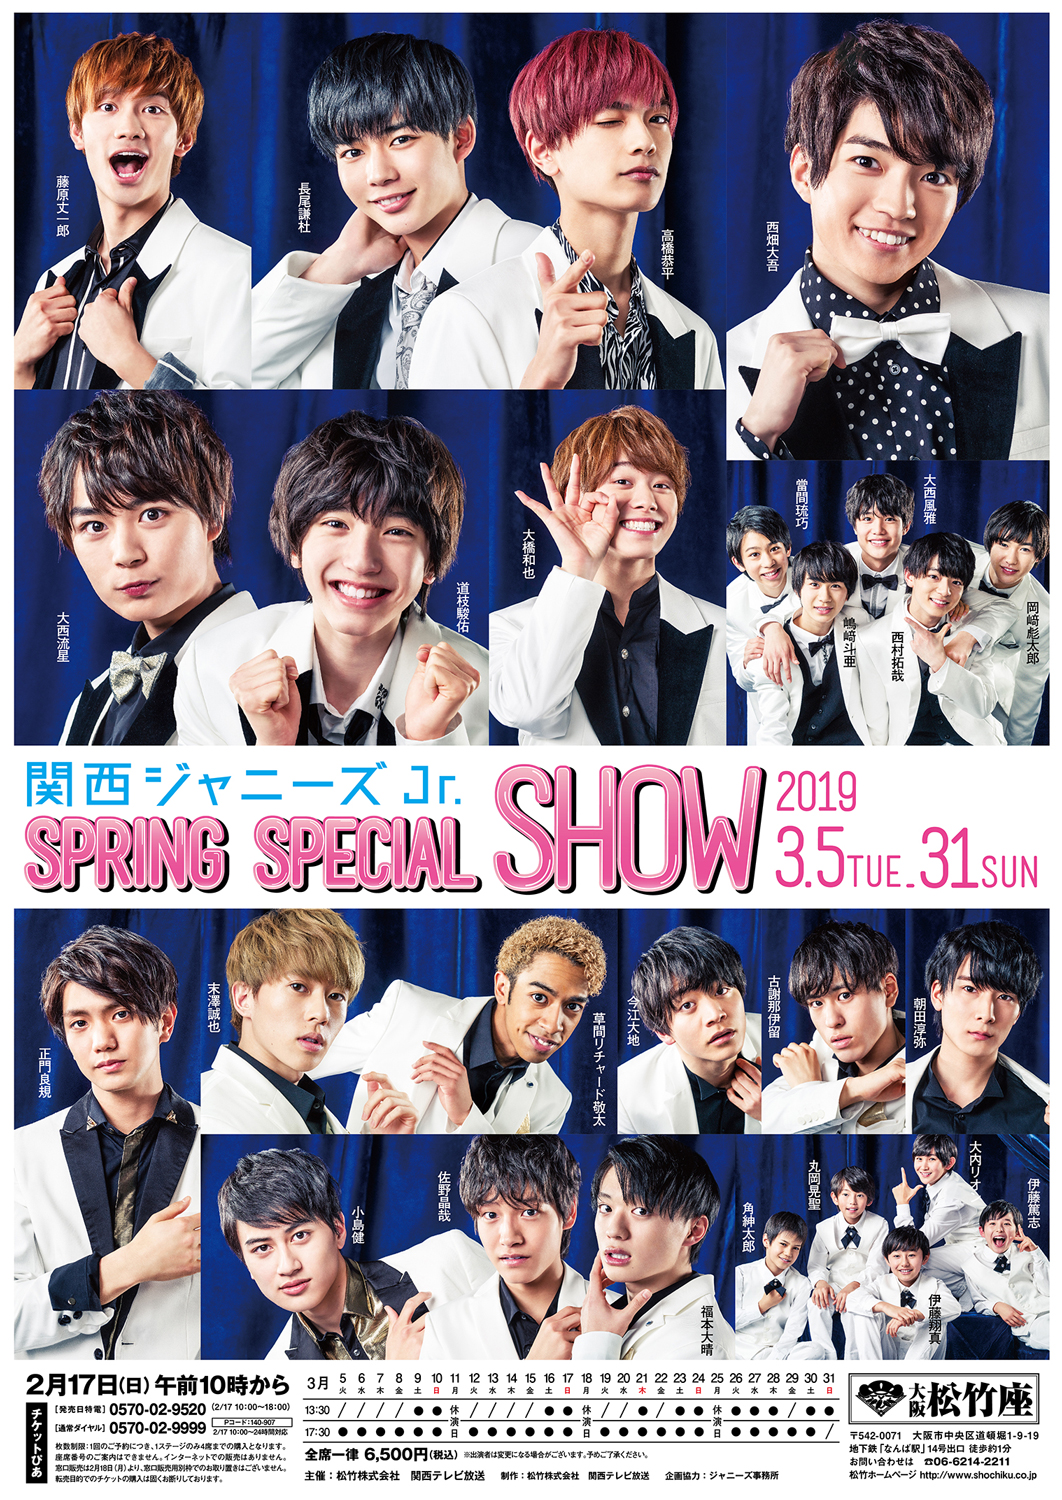 関西ジャニーズjr Spring Special Show 19